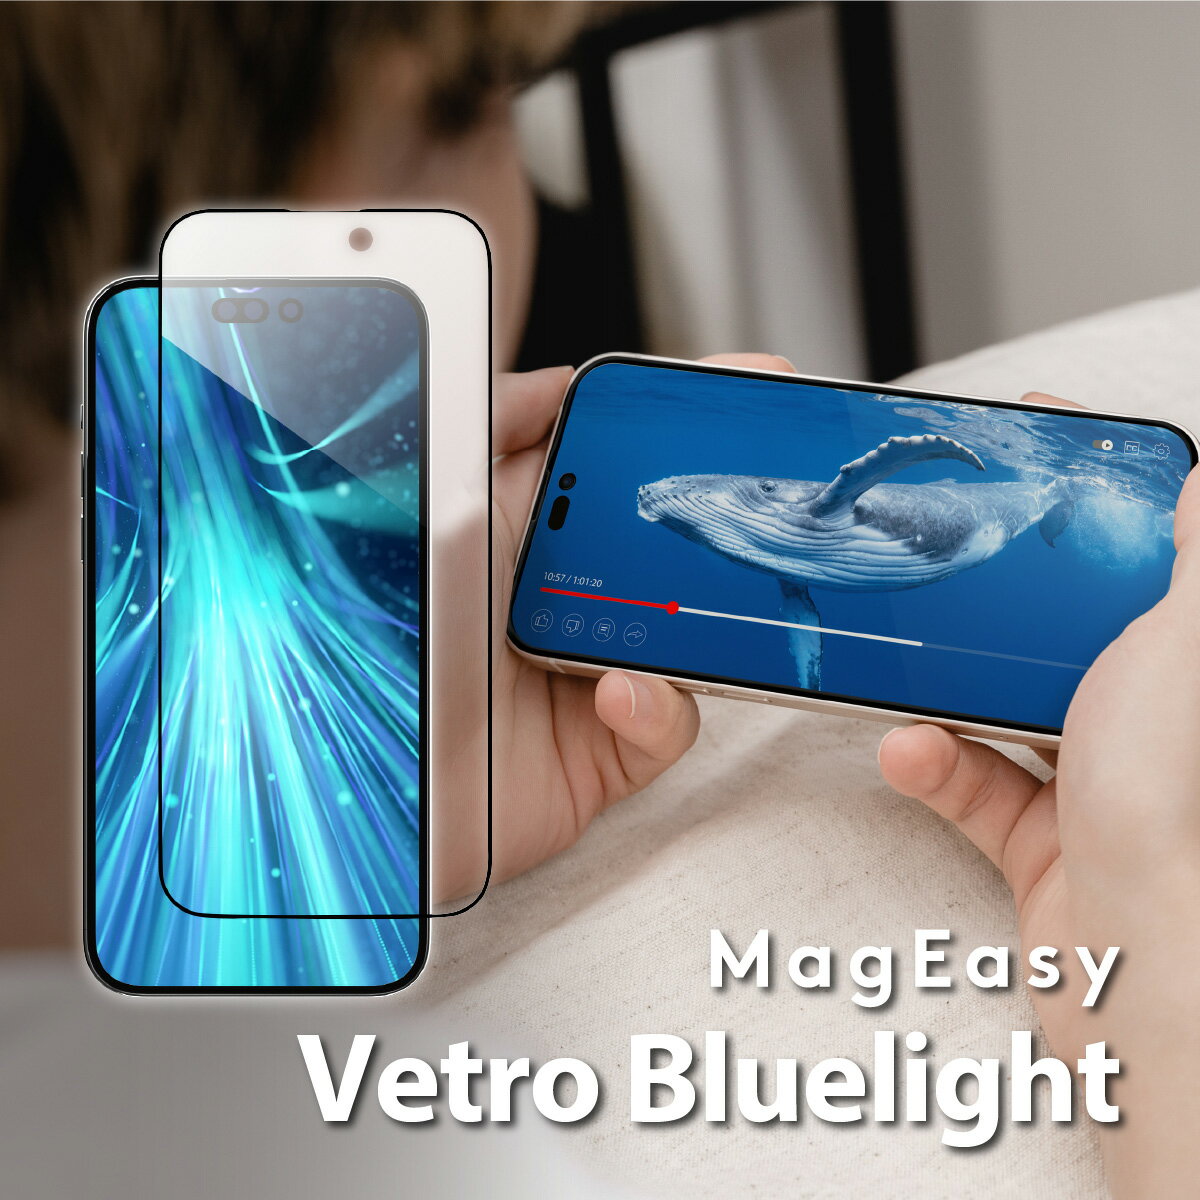 iPhone14 ガラスフィルム ブルーライト カット 9H 強化ガラス 指紋 気泡 防止 フィルム ブルーライトカット ラウンドエッジ 加工 高透過率 保護フィルム 貼りやすい 透明 保護ガラス Apple iPhone 14 アップル アイフォン / アイフォン14 対応 MagEasy Vetro Bluelight